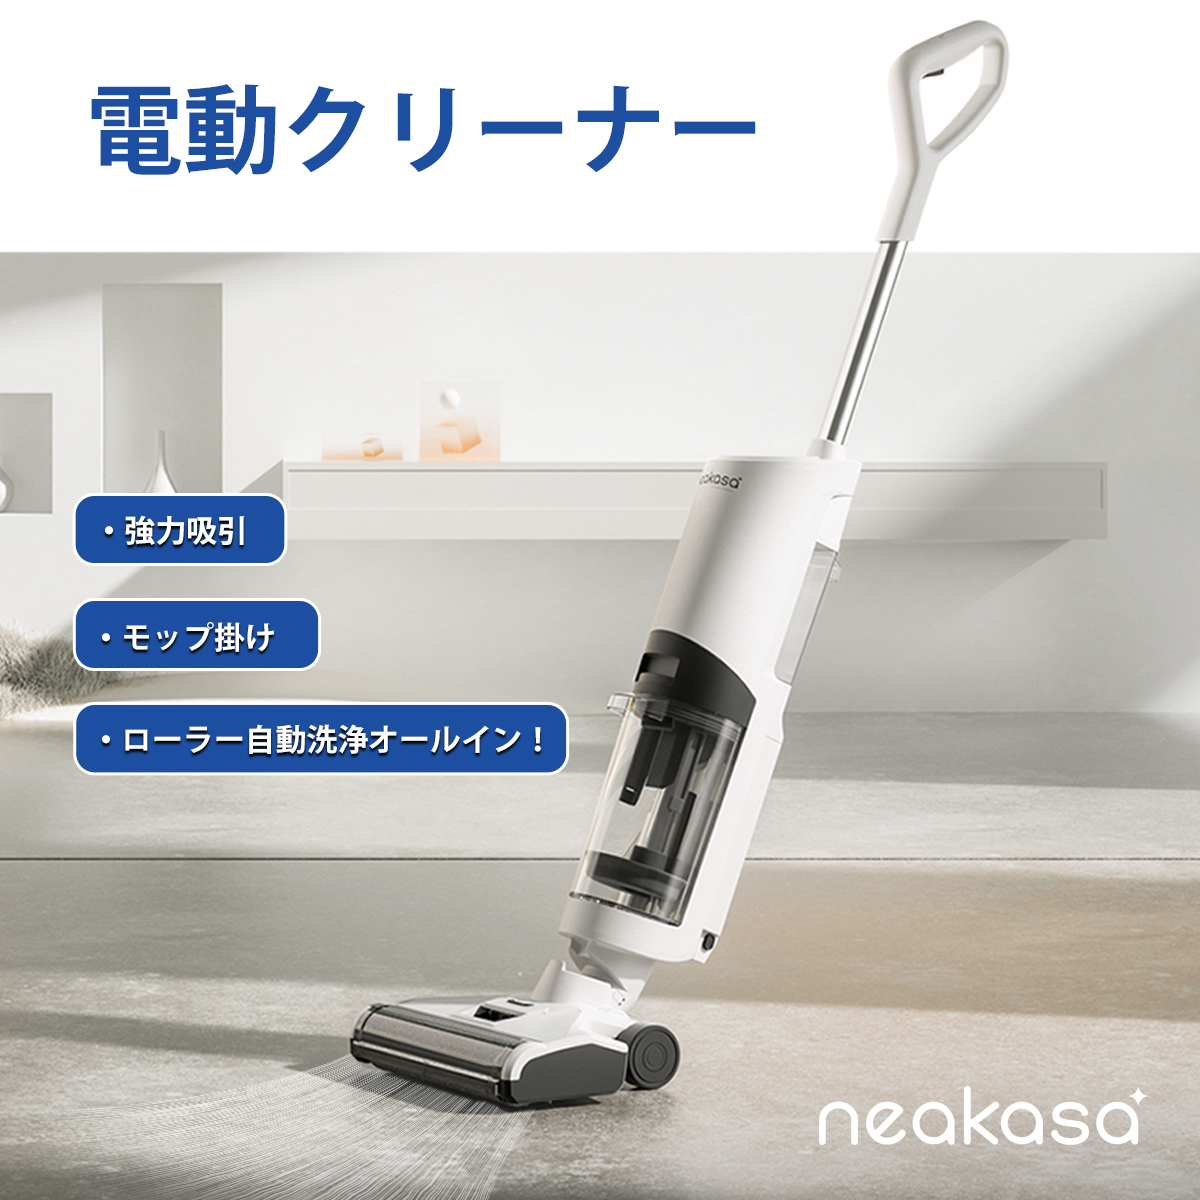 Neakasa Power scrub II コードレス掃除機 自走式ヘッド 強力吸引 水 